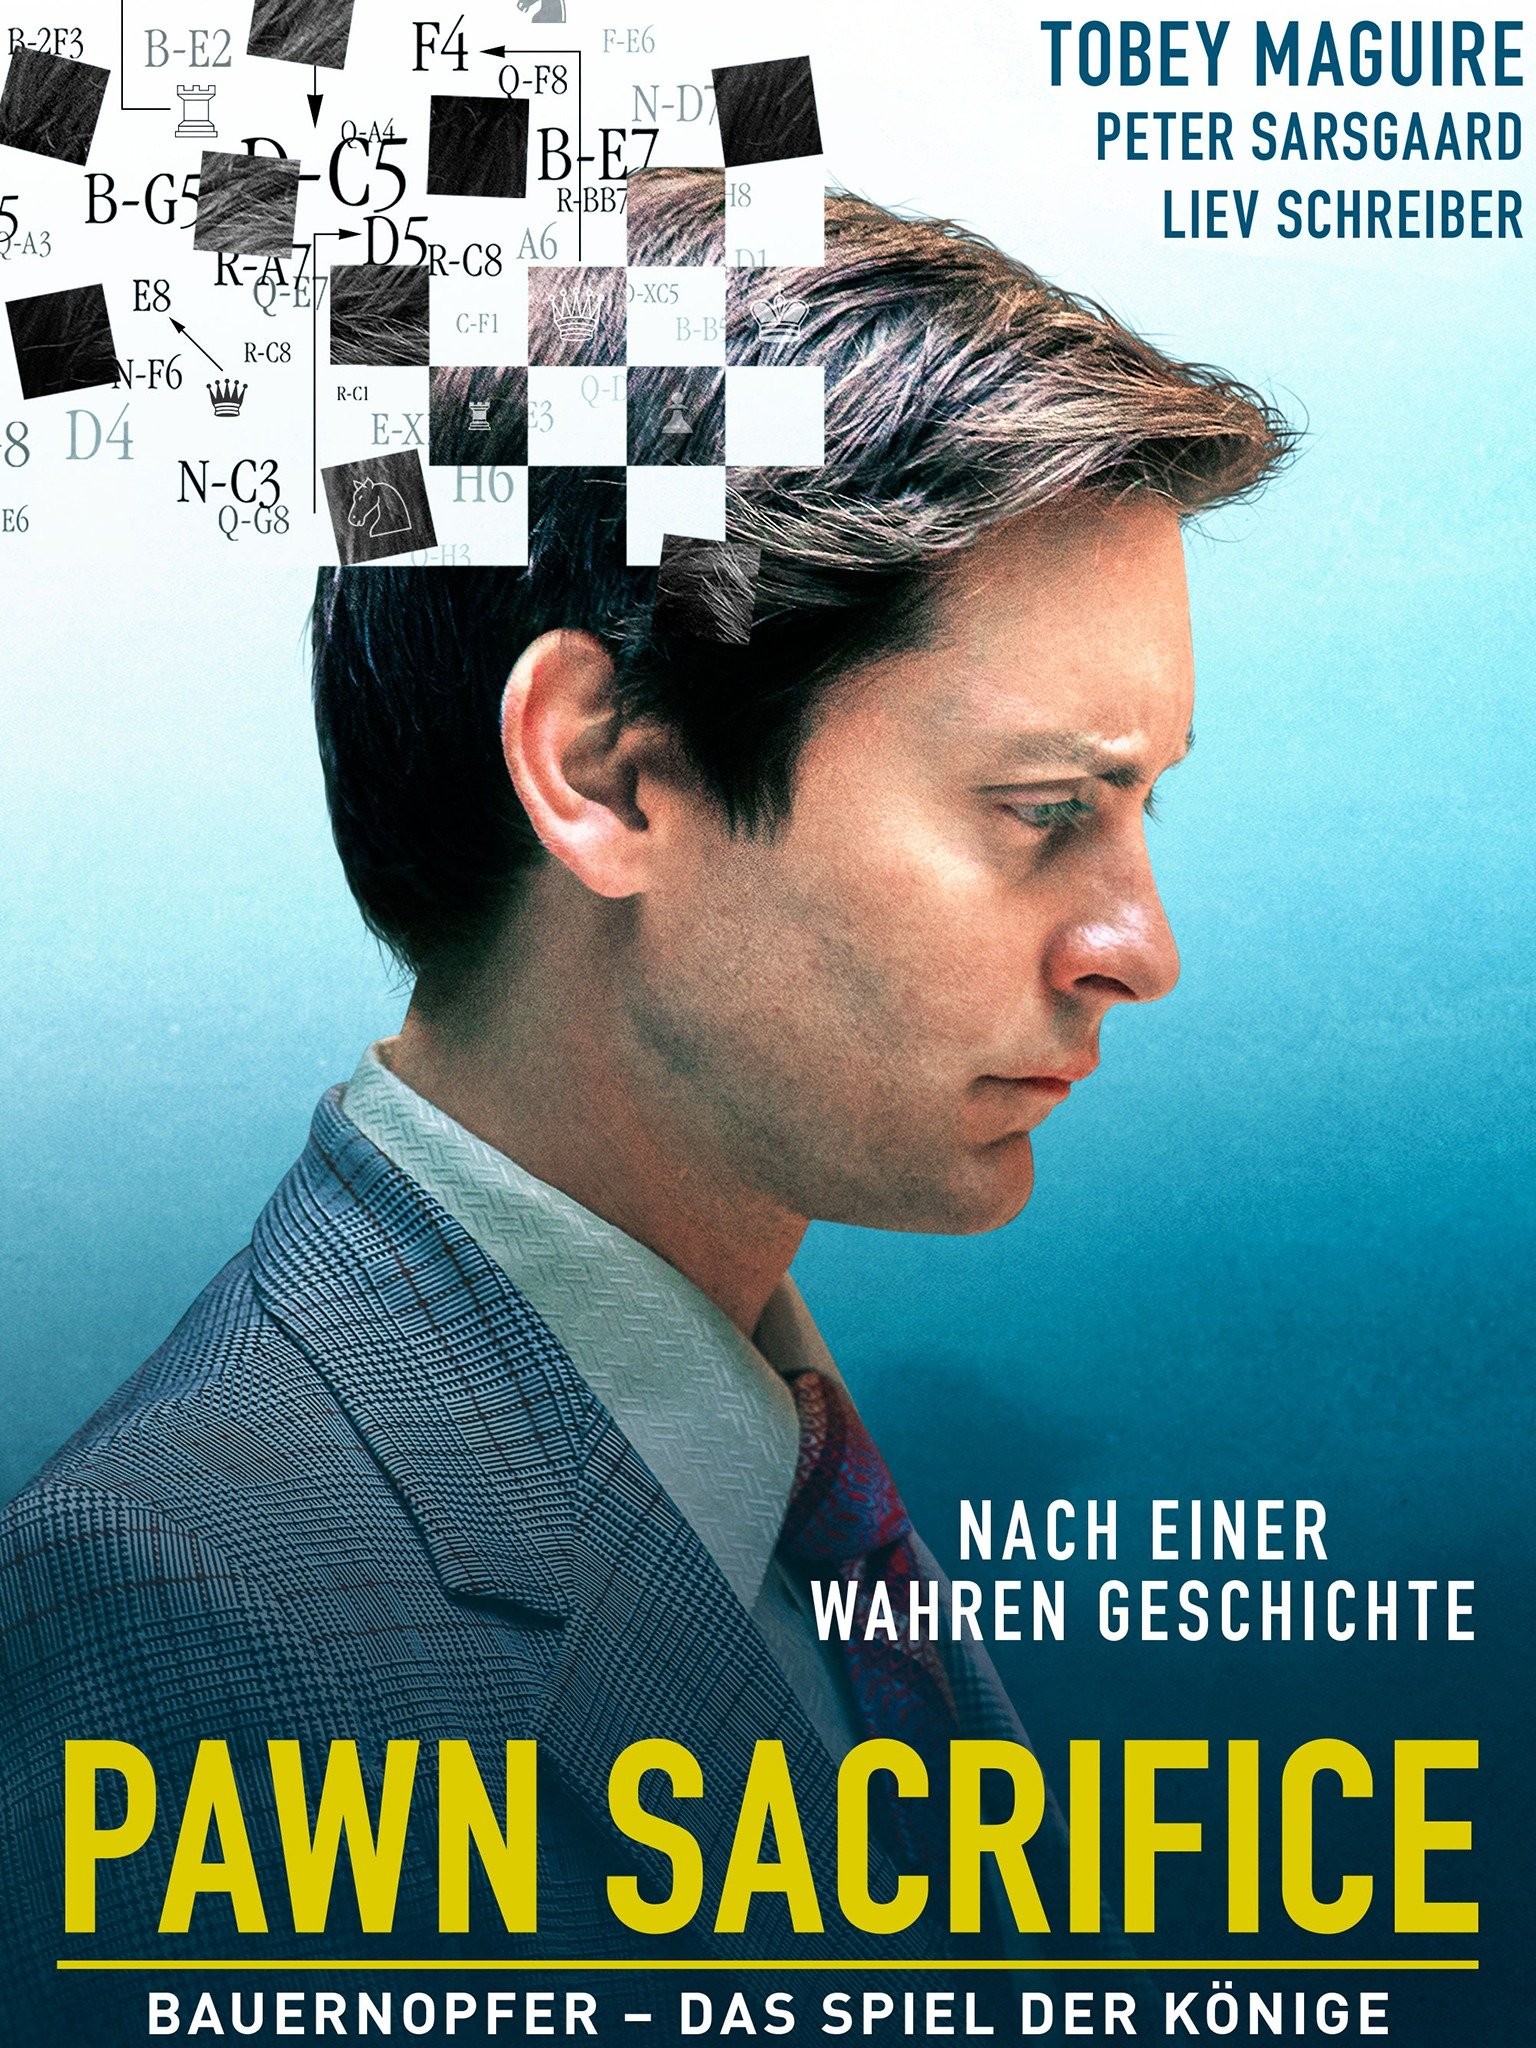 Pawn Sacrifice TRAILER 1 (2015) - Tobey Maguire, Liev Schreiber